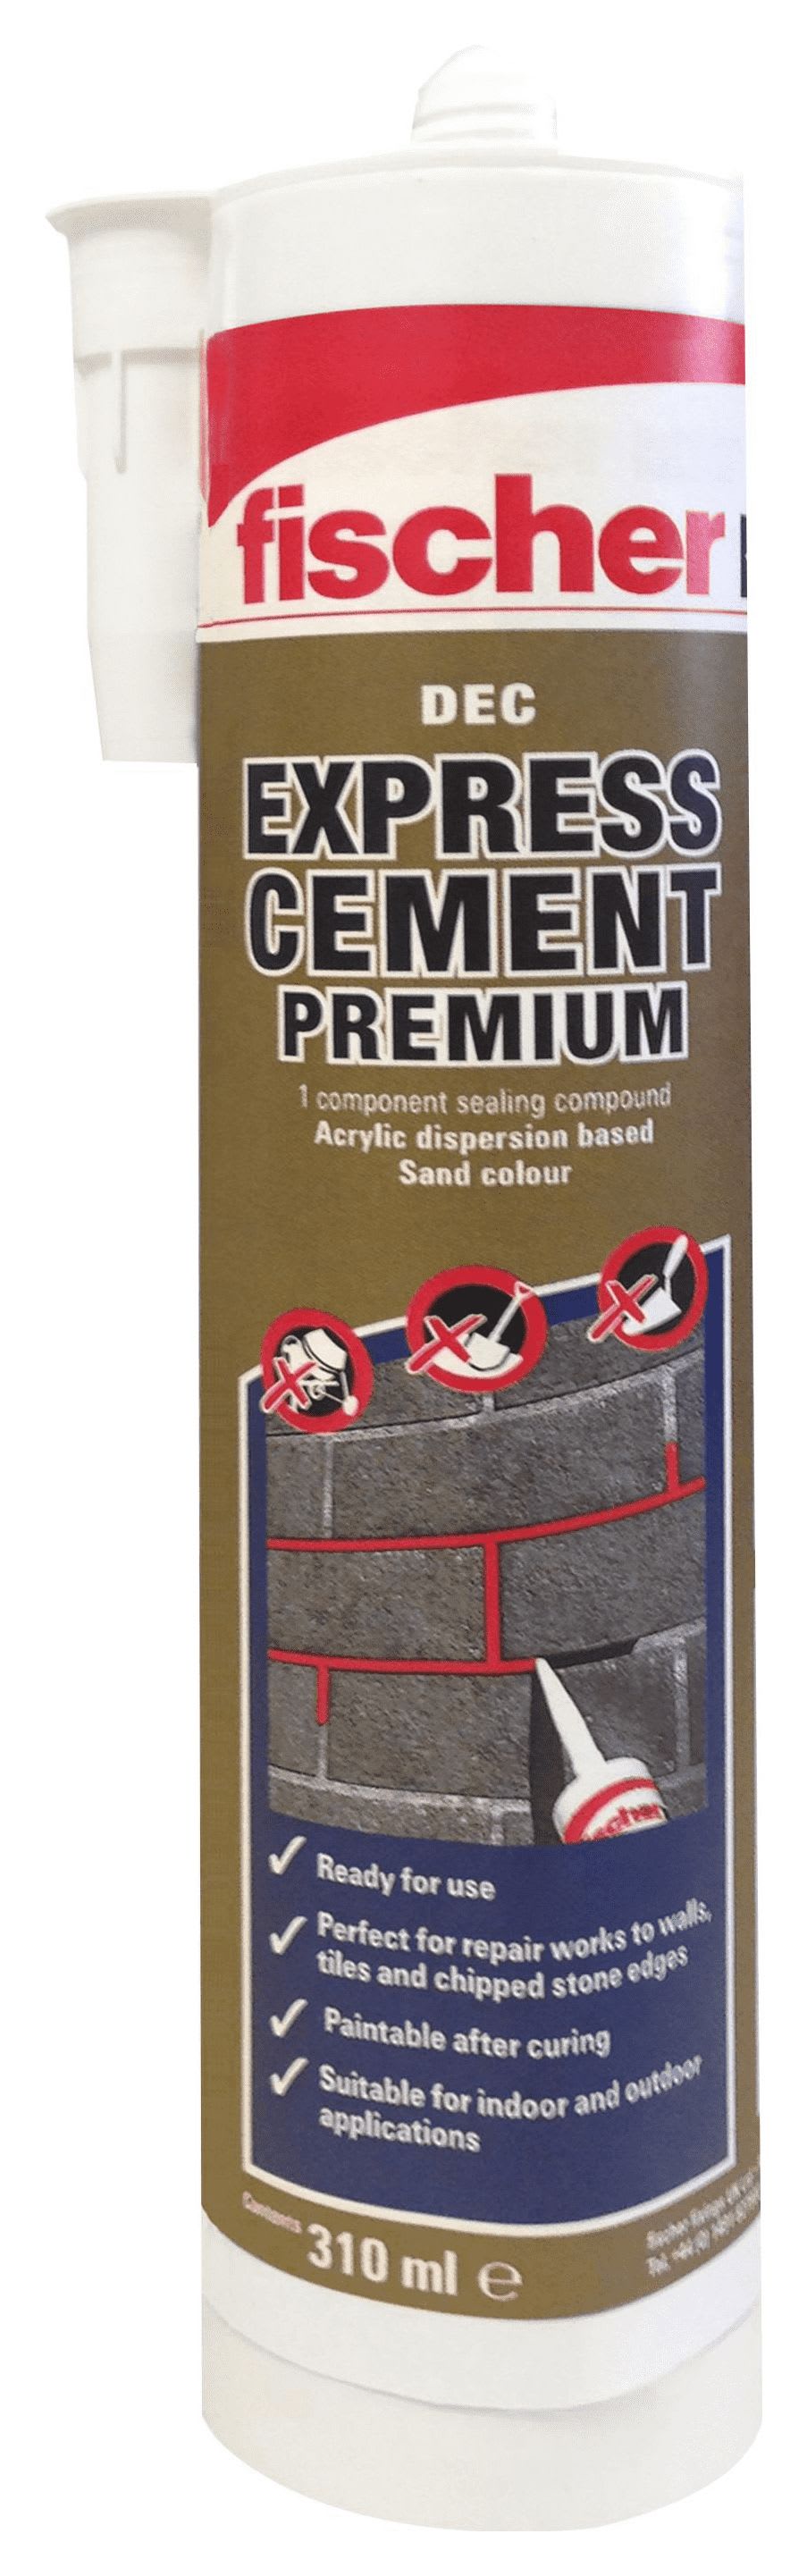 Fischer DEC Premium Express Cement - Sand 310ml